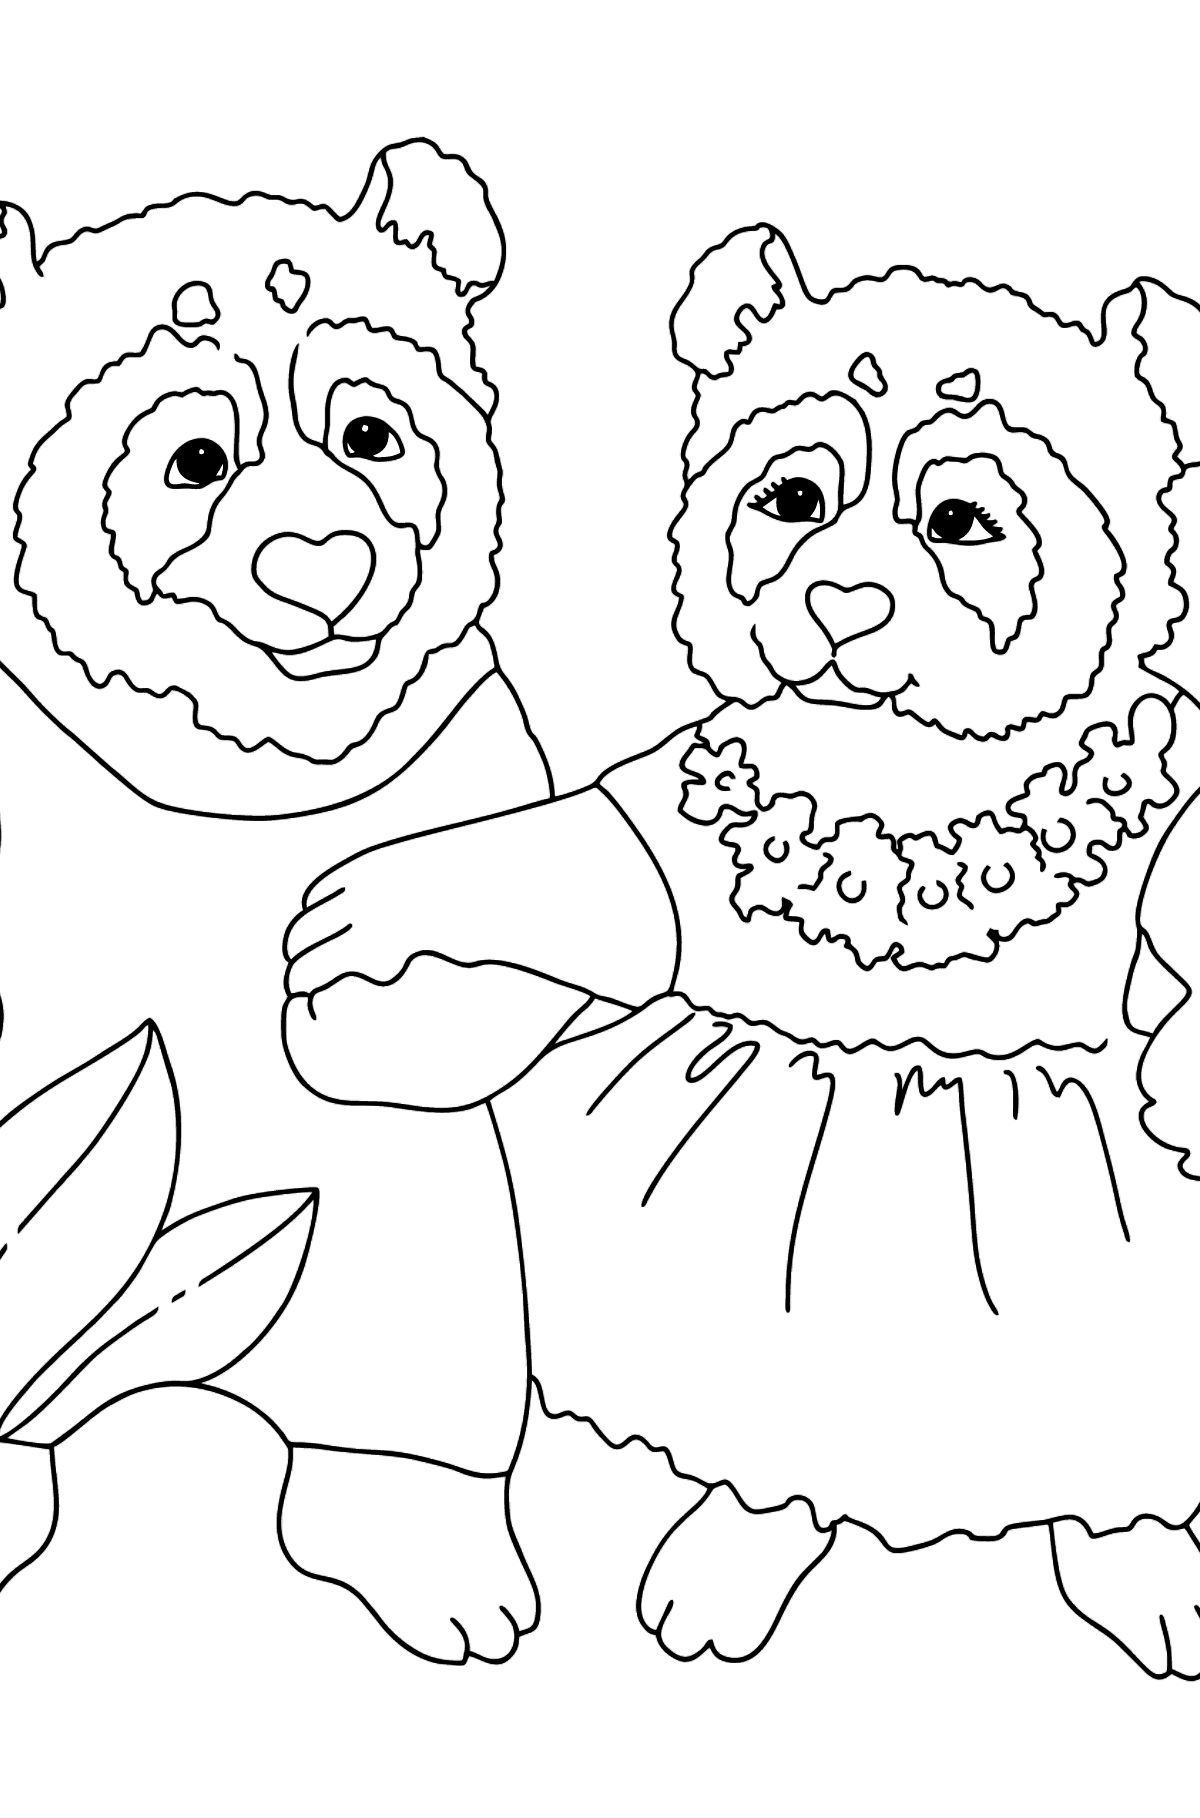 Desen de colorat imaginea panda - Desene de colorat pentru copii